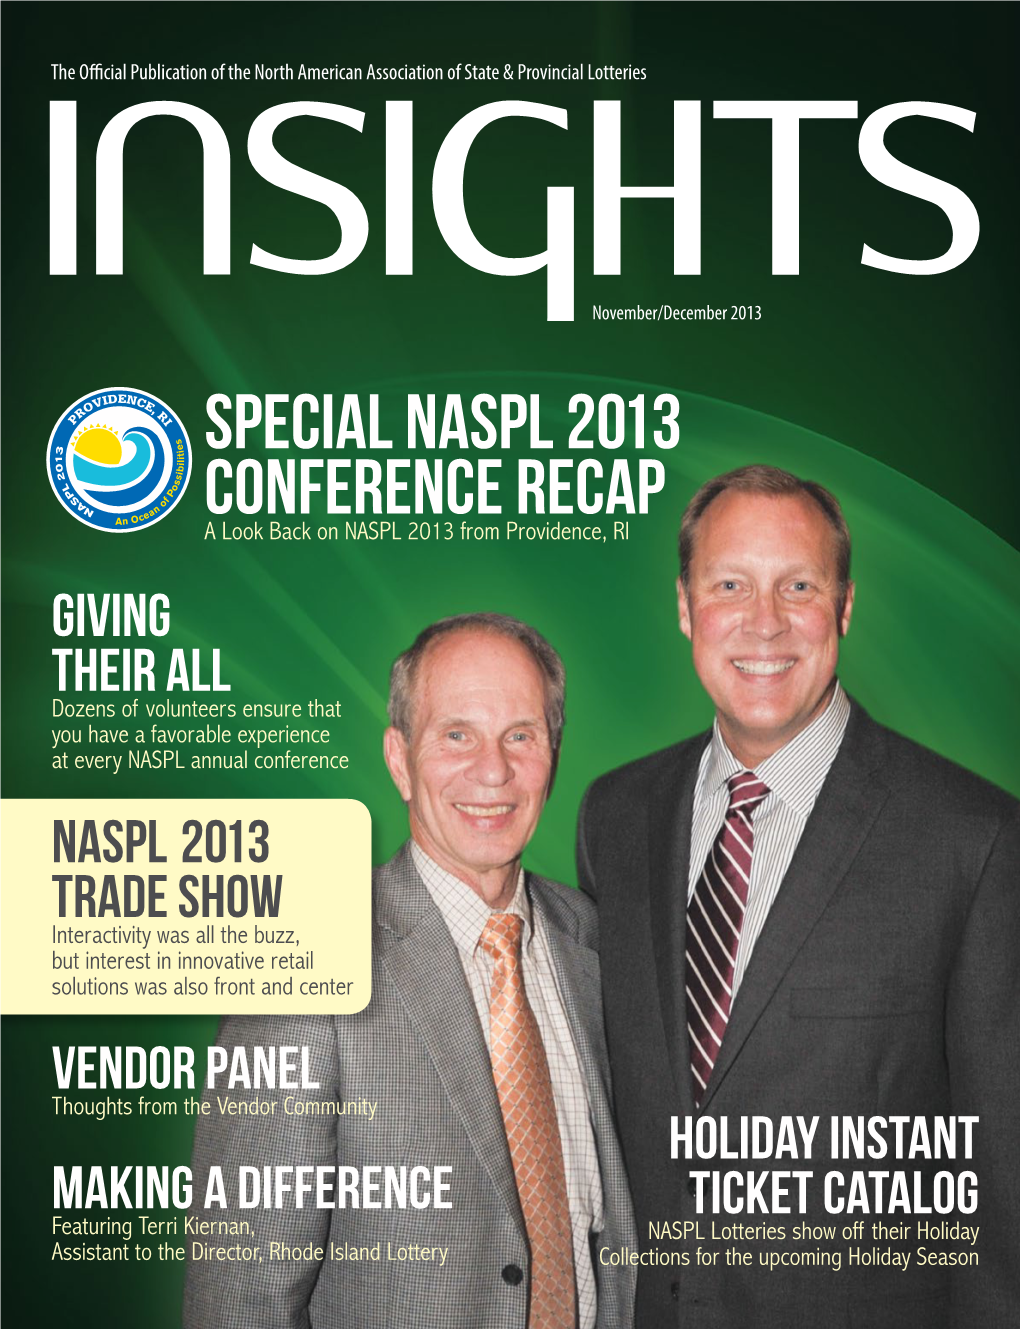 Special NASPL 2013 Conference Recap